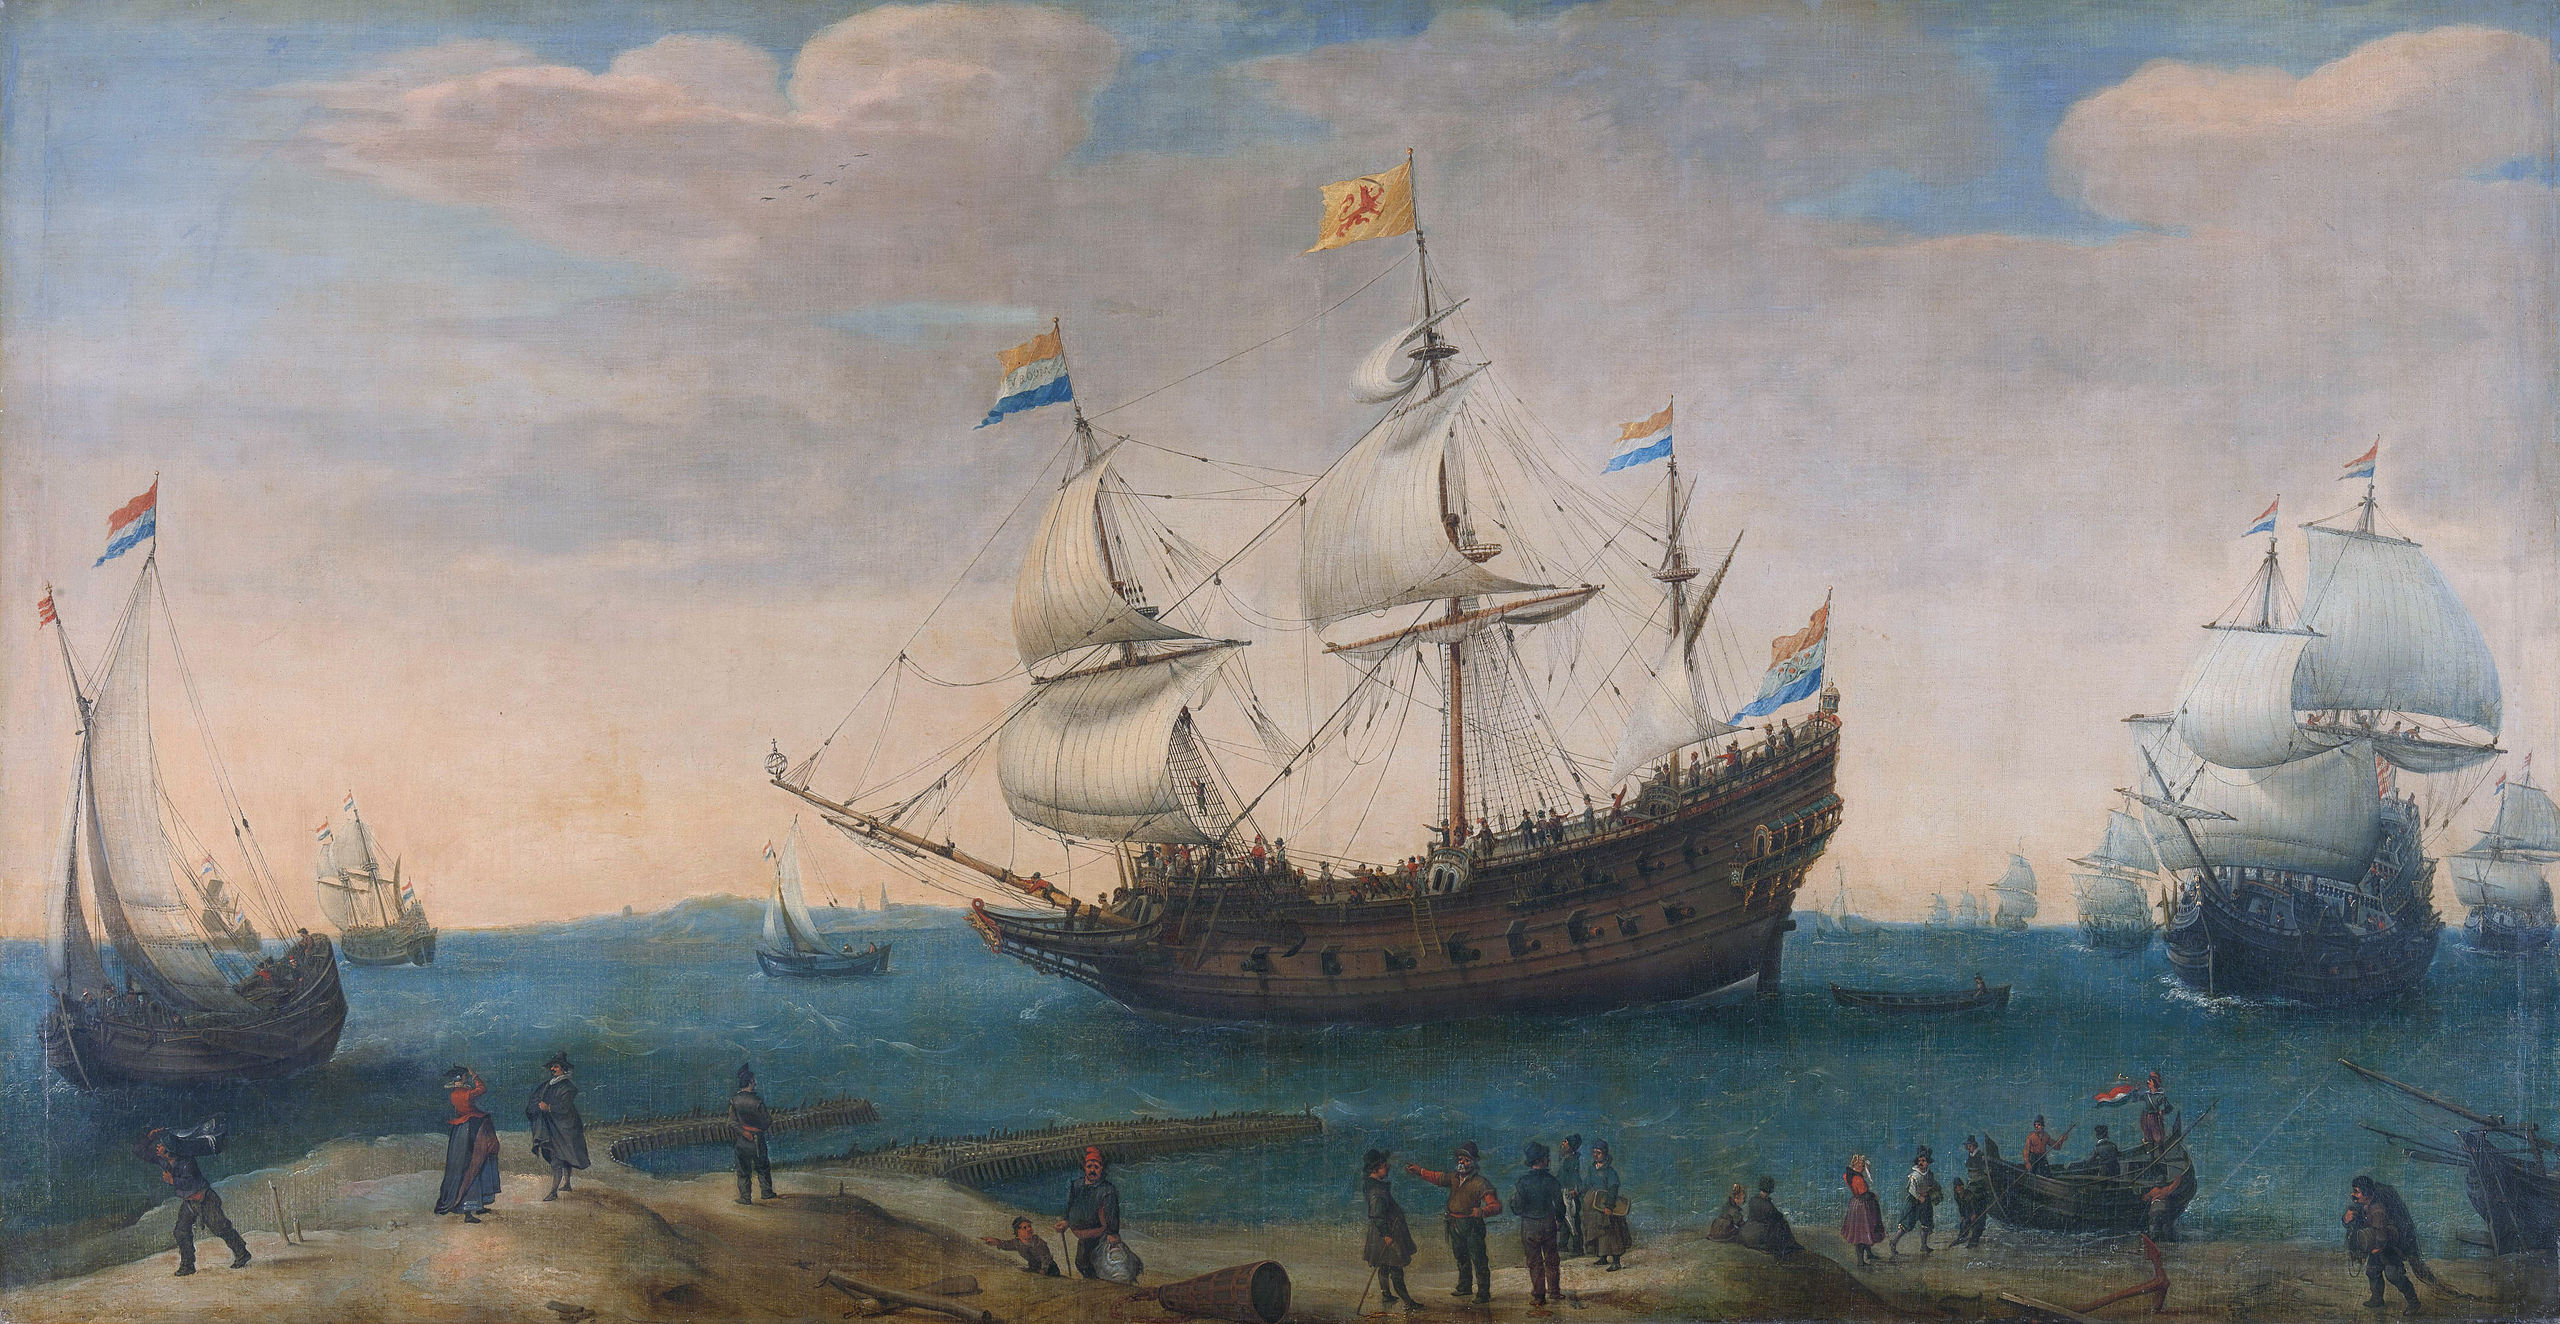 Companhia das Índias Ocidentais - Como surgiu, para que servia e mais! (Imagem: Pintura "East Indiamen off a Coast", de Hendrik Cornelisz Vroom, c. 1600 - c. 1630)